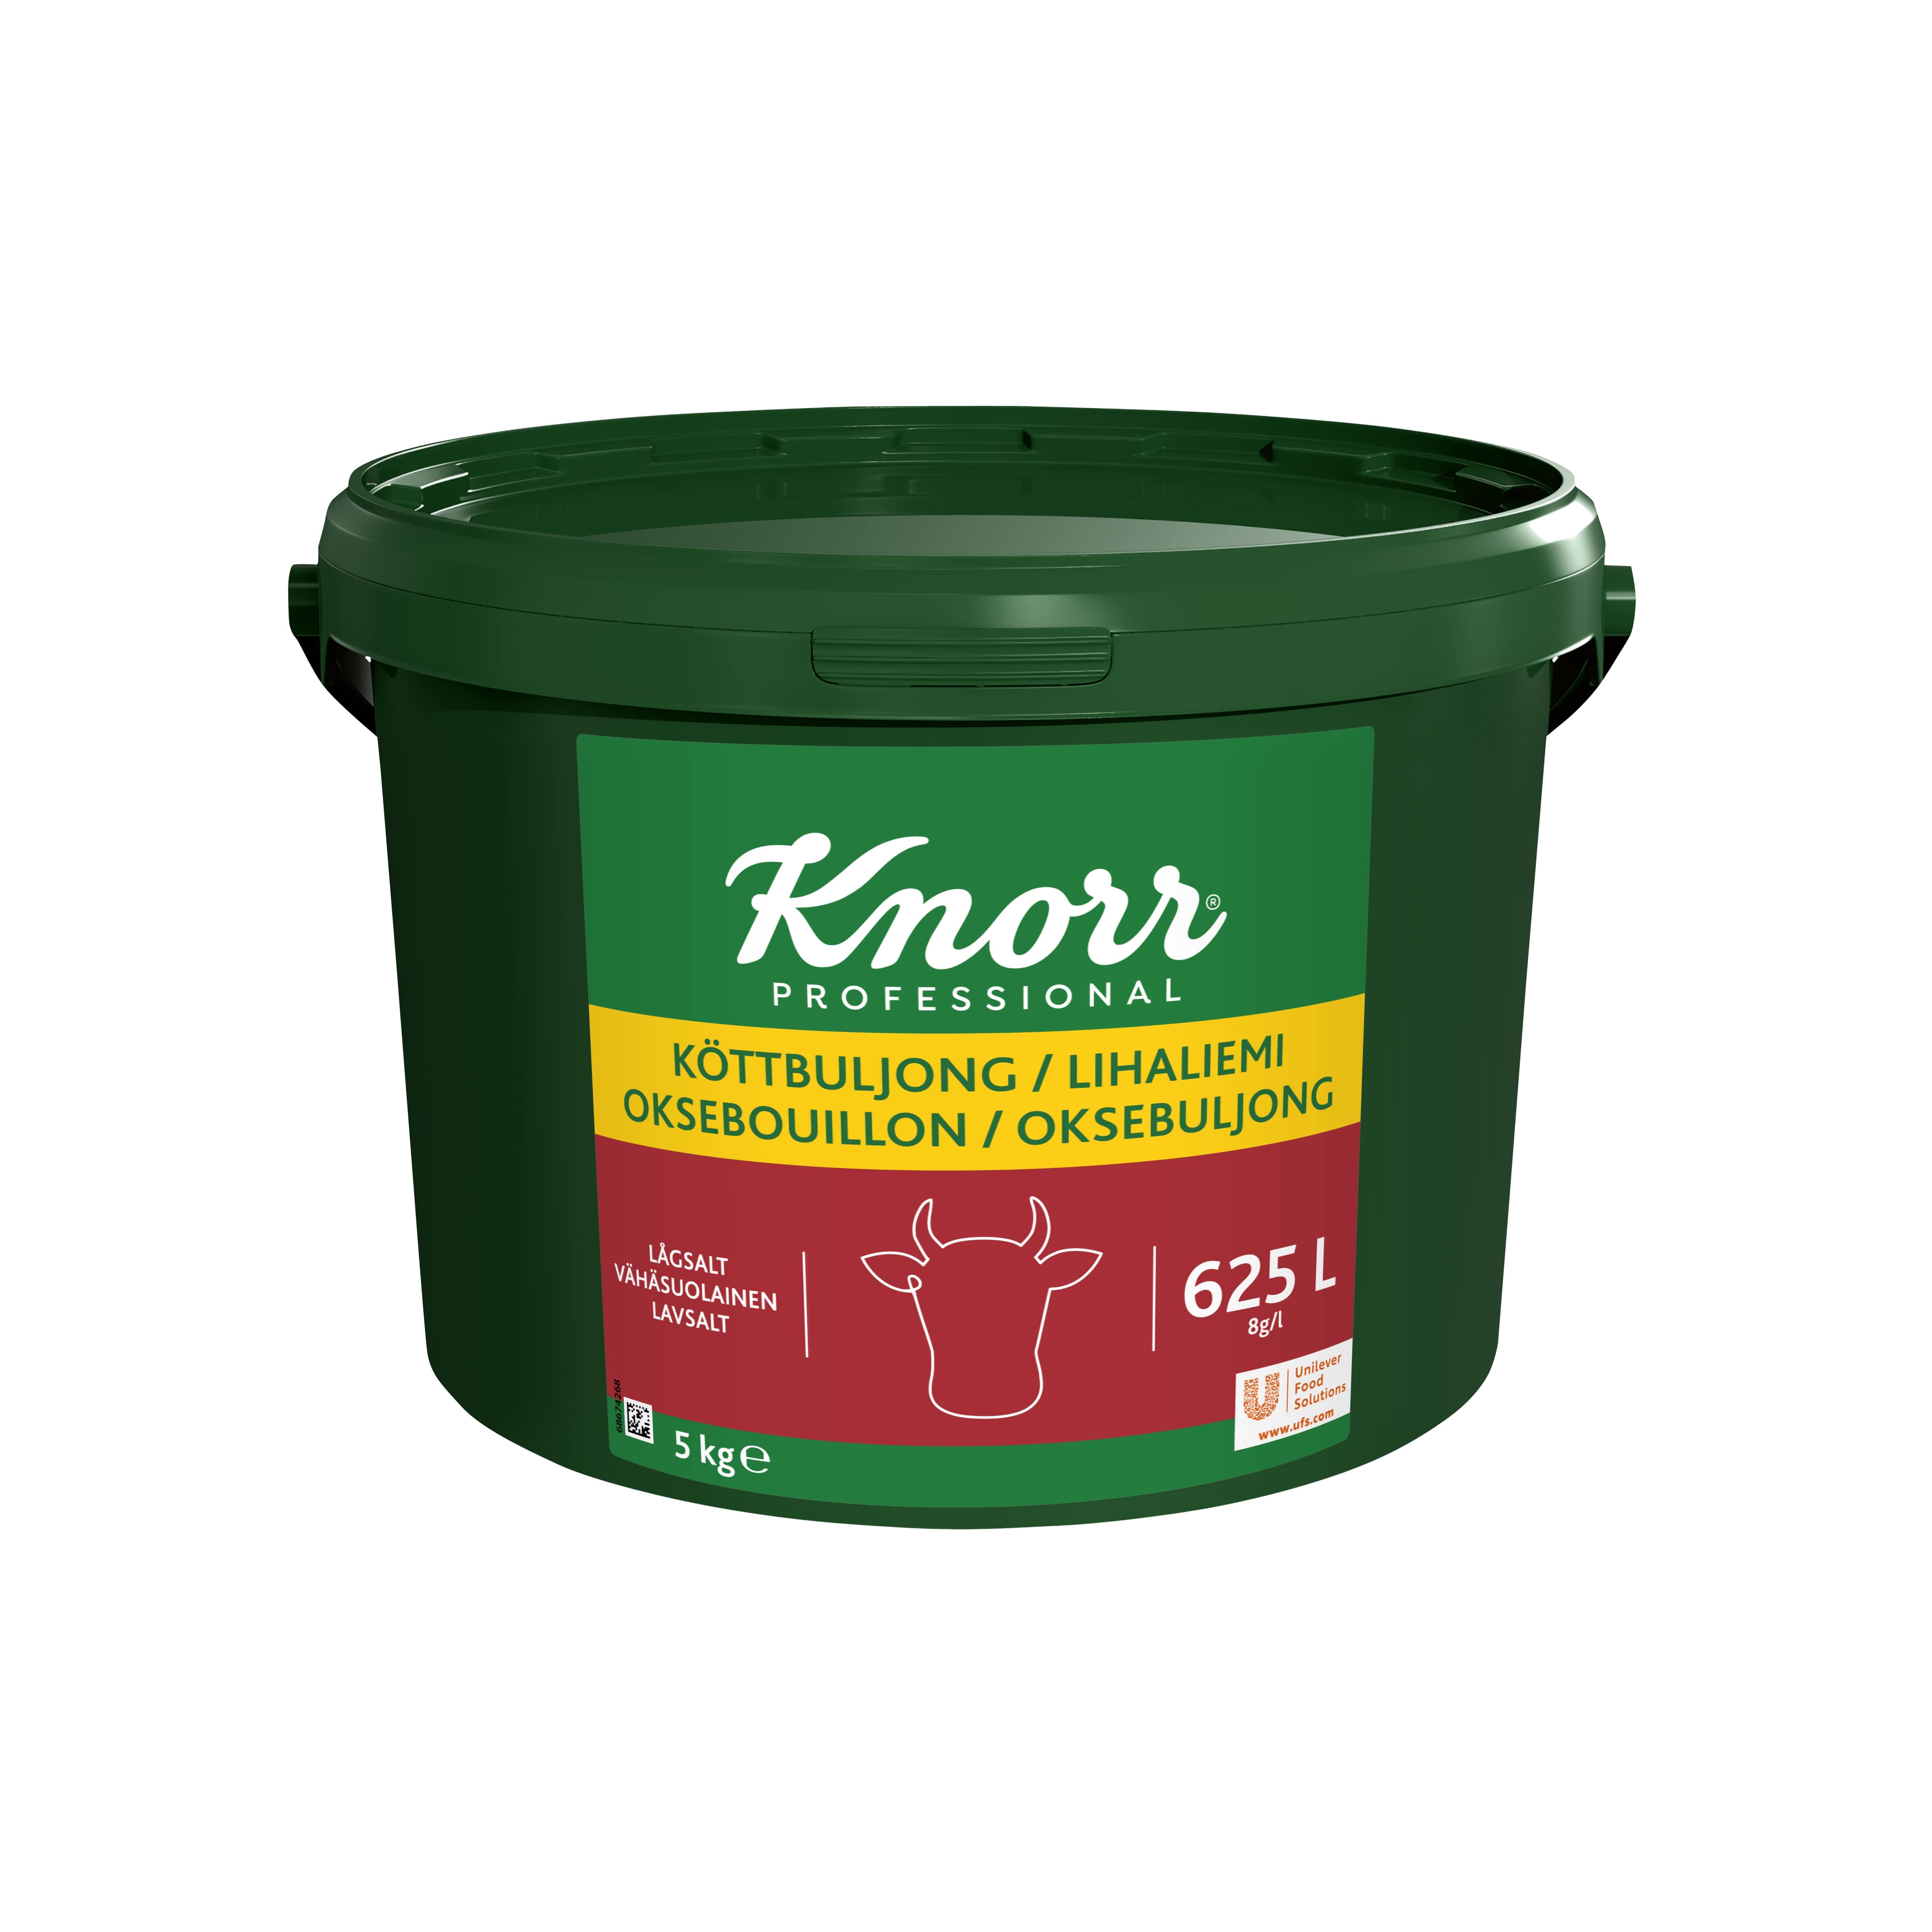 Knorr Lihaliemi vähäsuolainen 5 kg/ 625 L - 